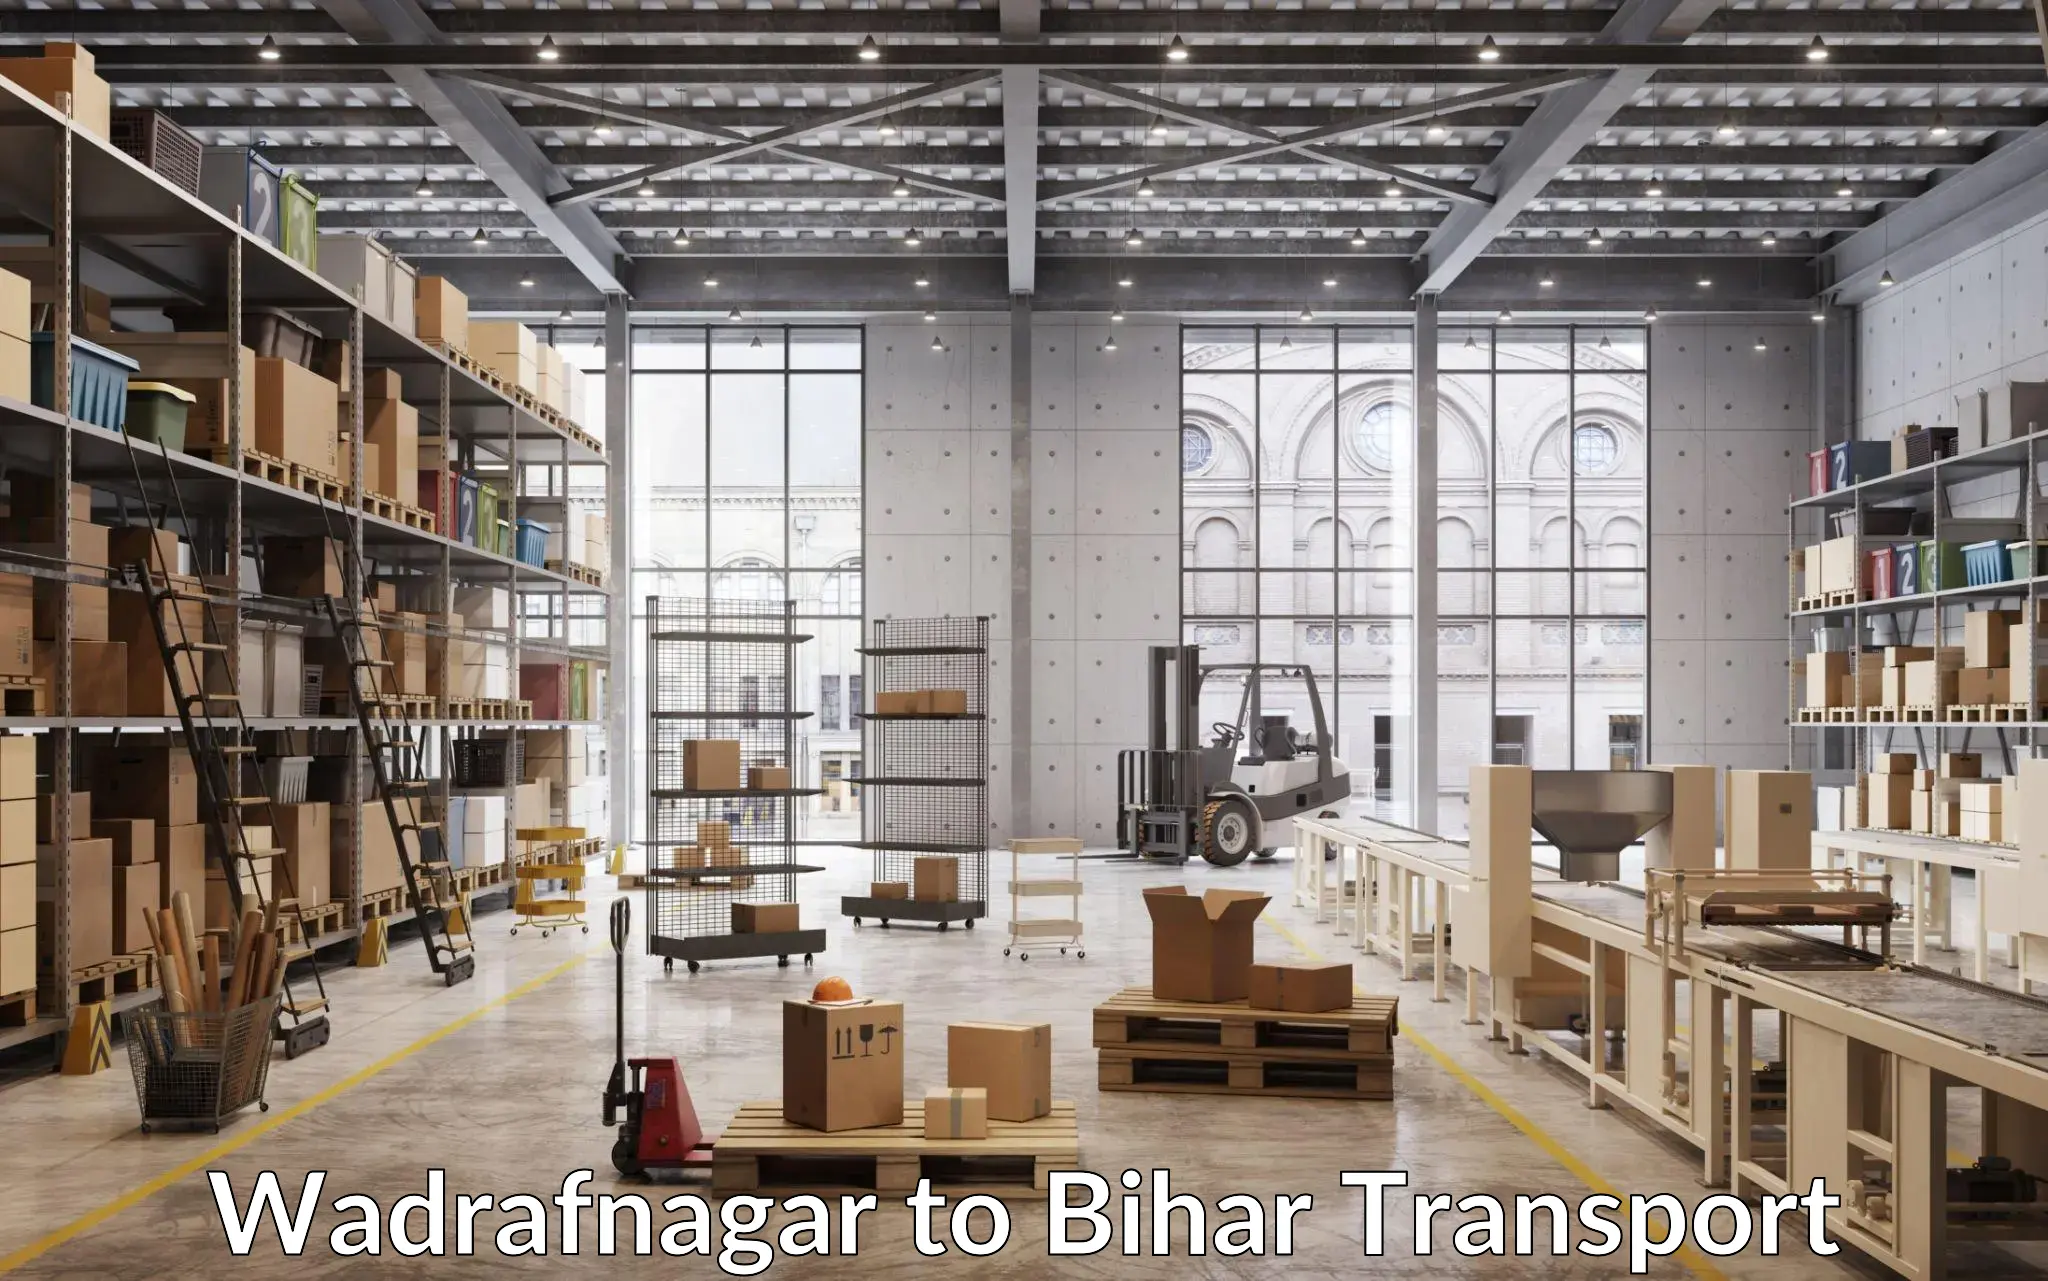 Part load transport service in India Wadrafnagar to Mairwa